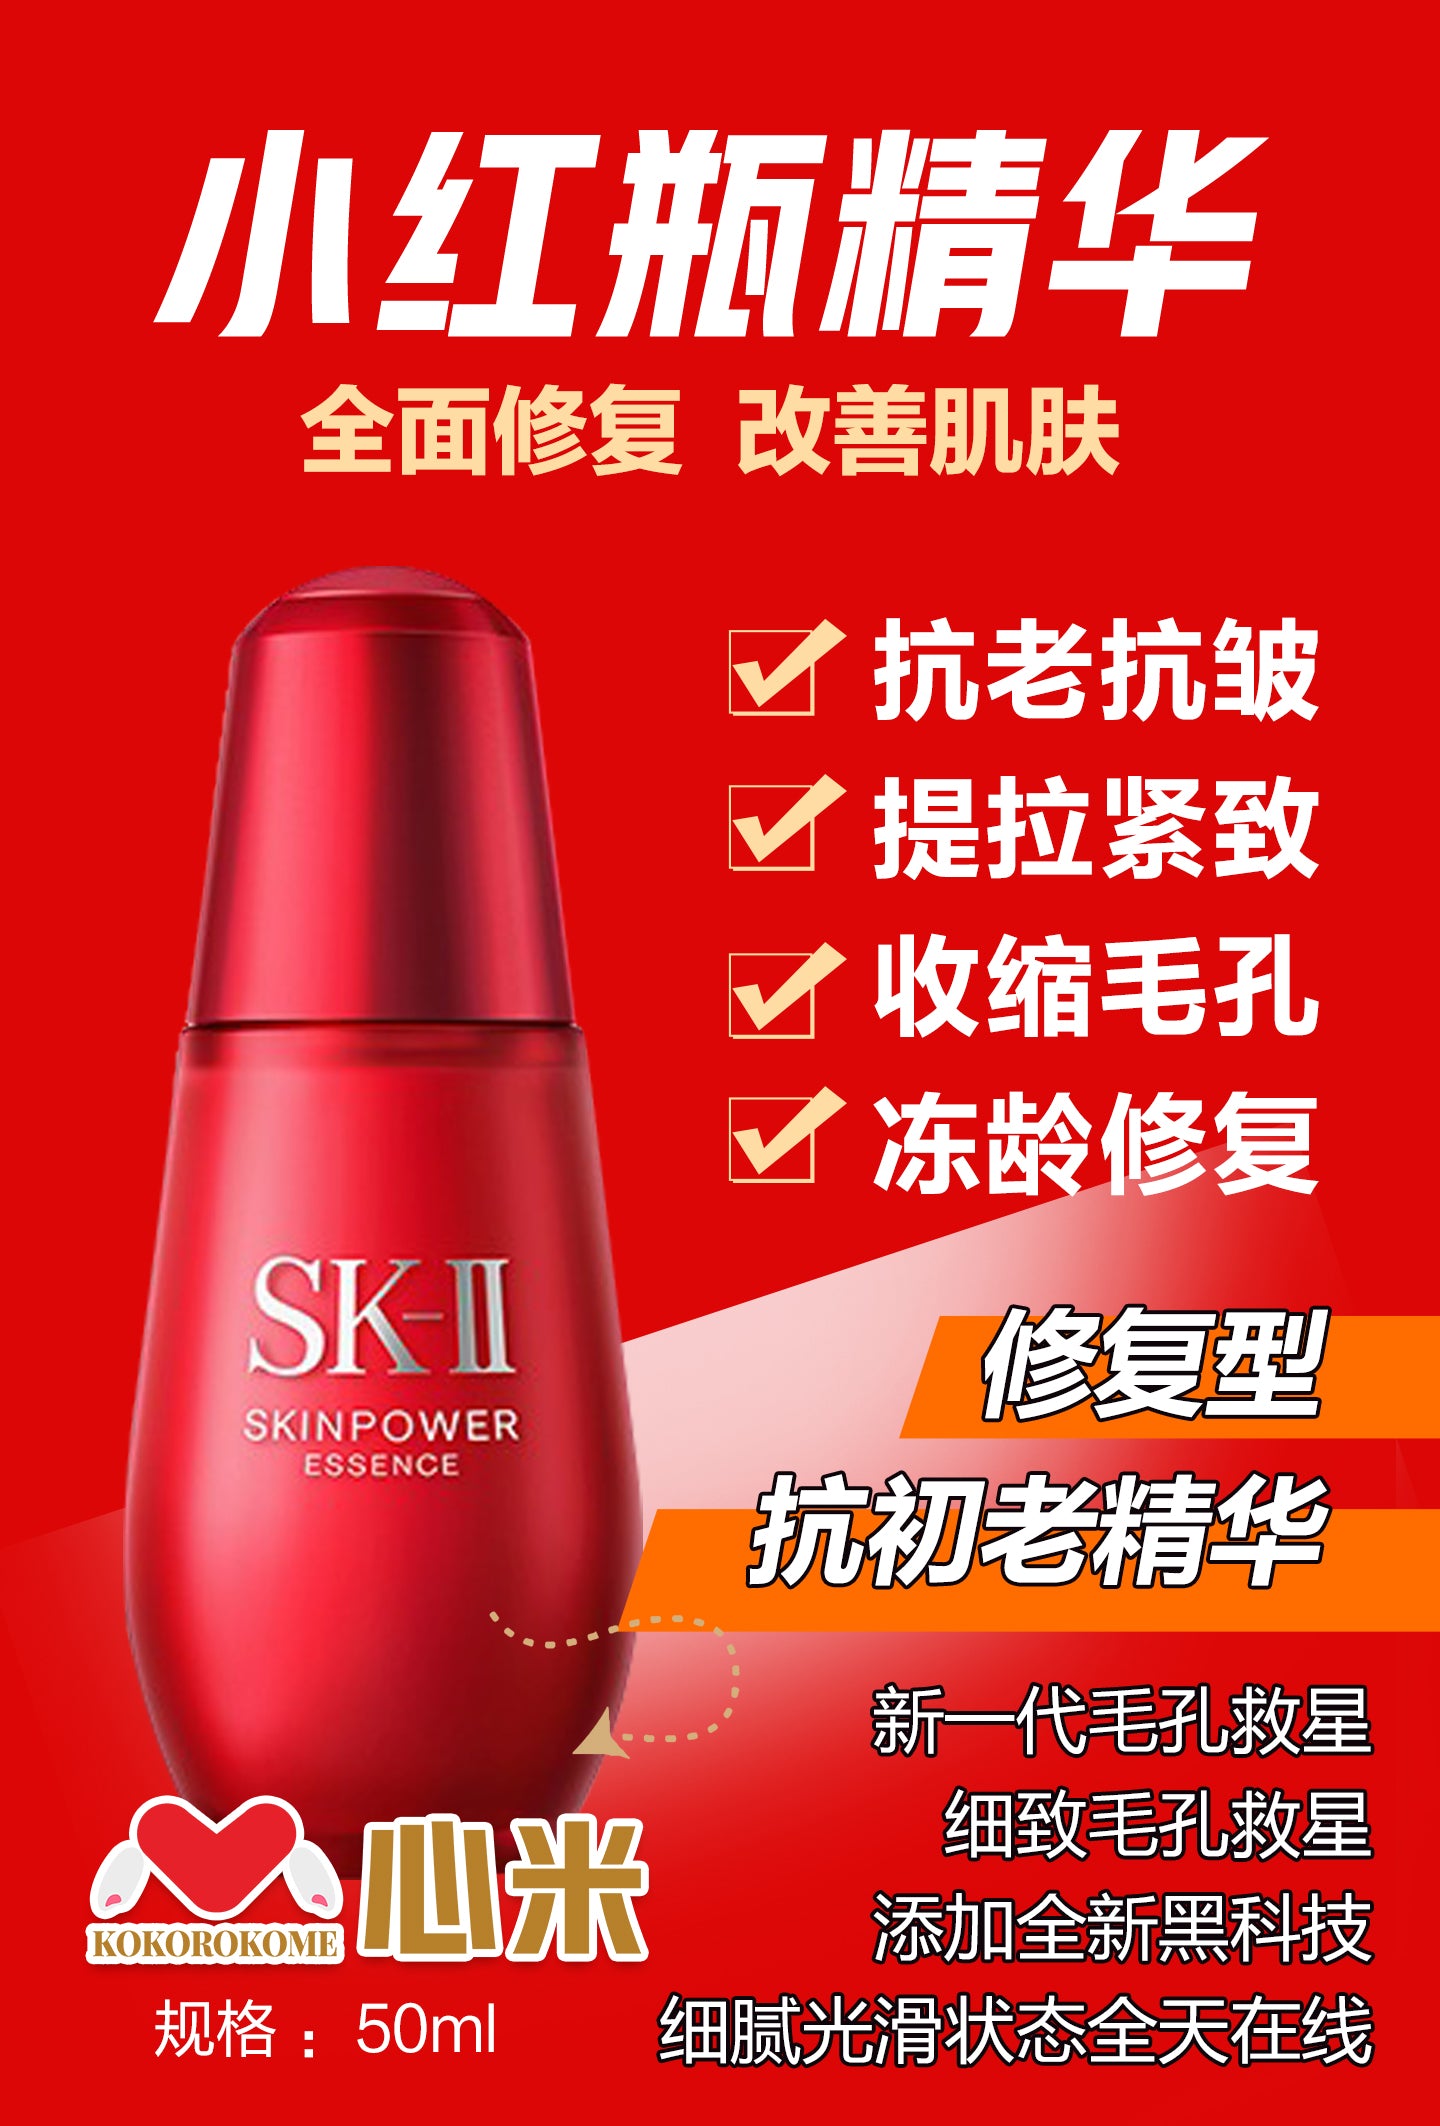 SK-II スキンパワーエッセンス 1mL×60回分スキンケア・基礎化粧品 